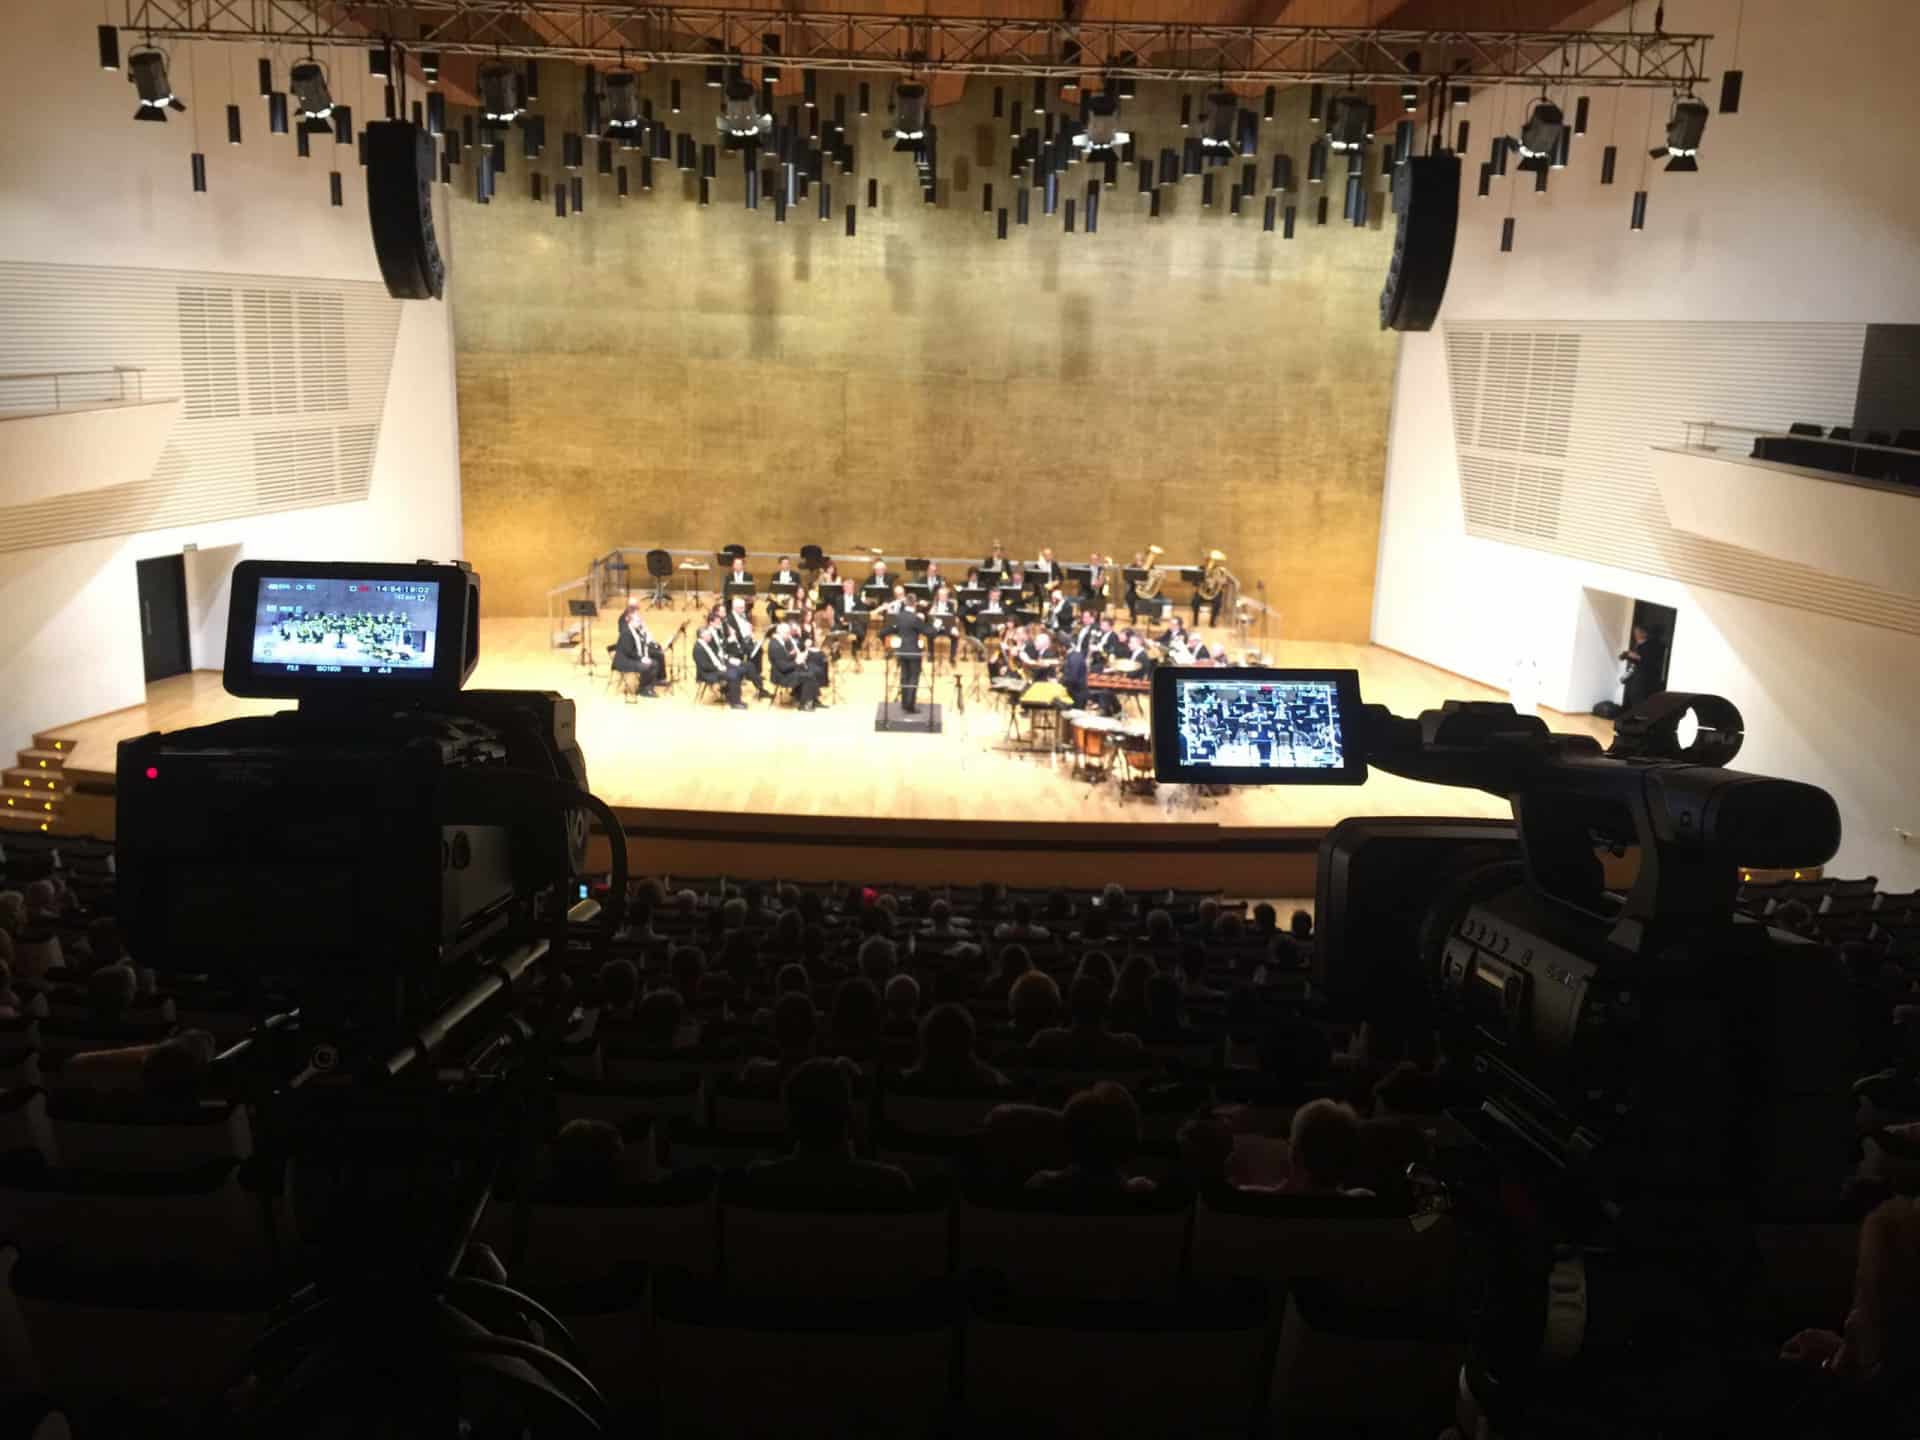 Productora Audiovisual de Alicante encargada de la Grabación de conciertos multicámara en Full HD. Equipo de microfonía de gran calidad.